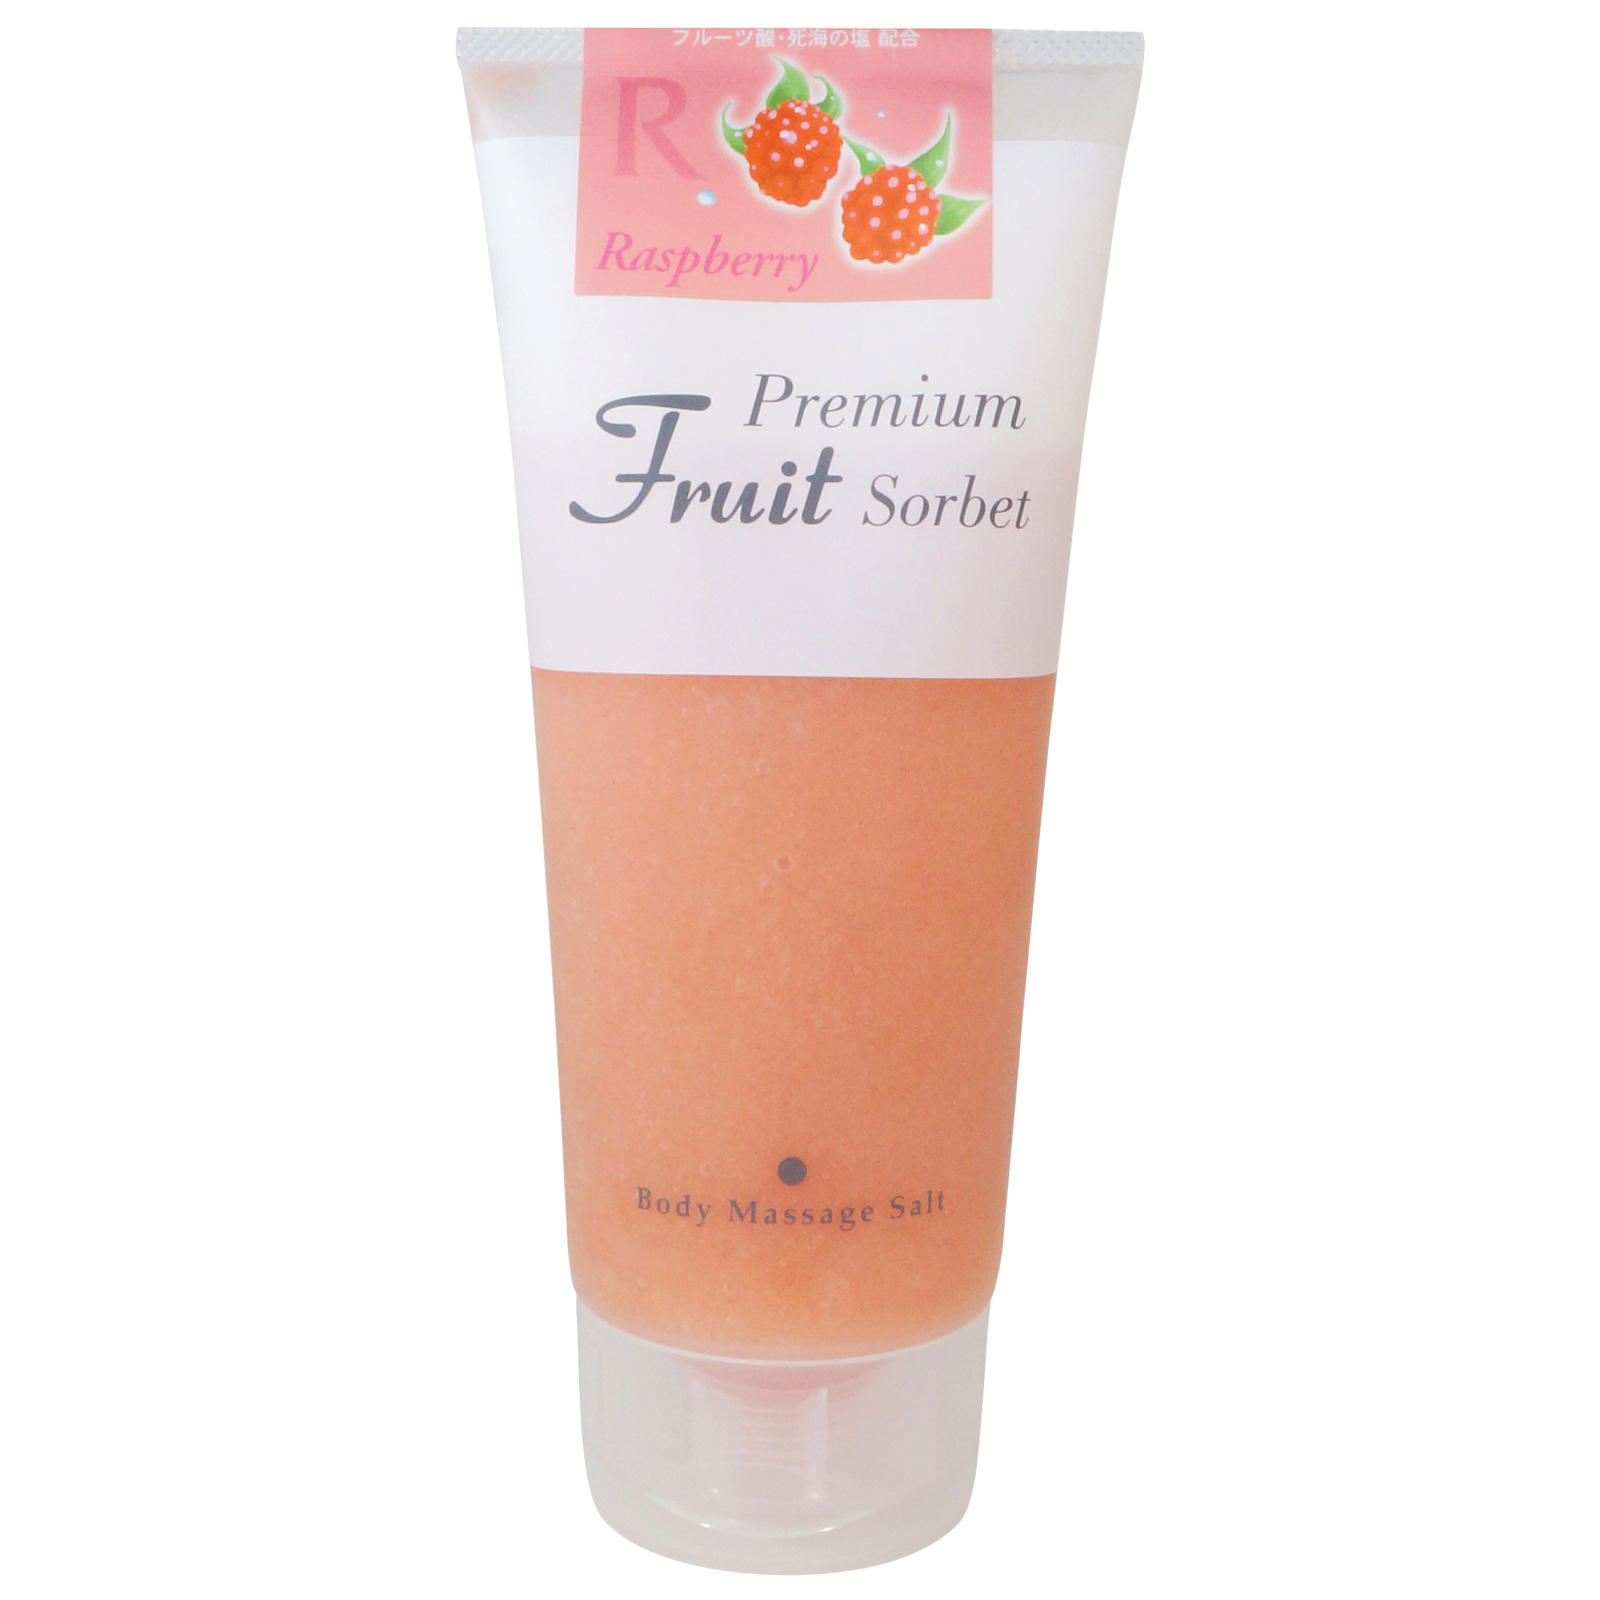 Cosmepro Premium Fruit Sorbet Body Massage Salt Raspberry. Премиальный фруктовый скраб-сорбет для тела на основе соли «Малина» Космепро, 500 г